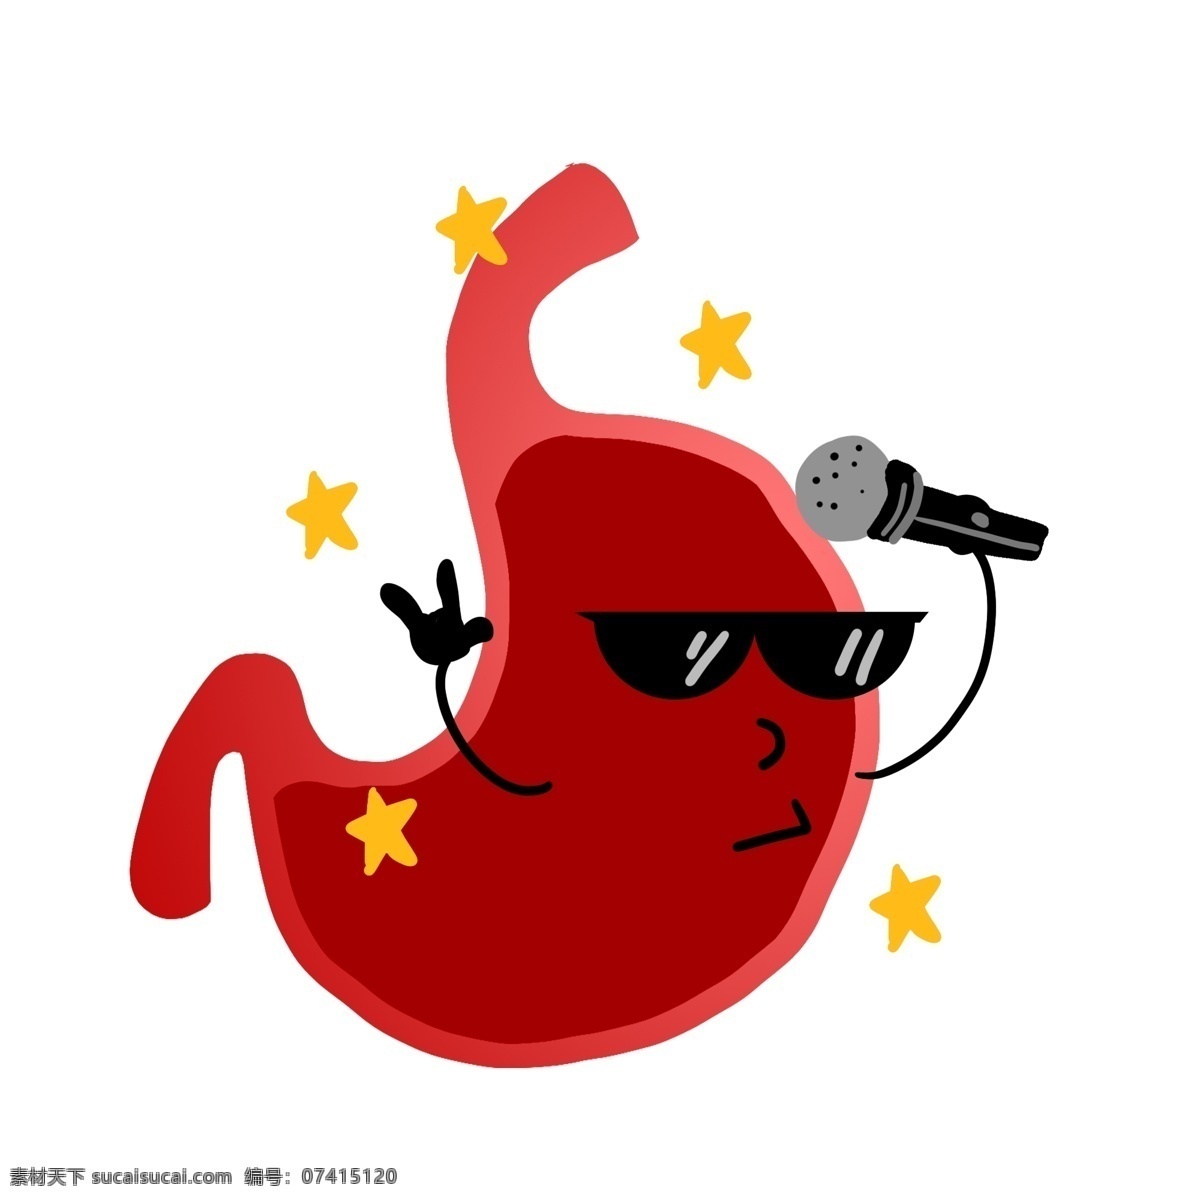 人体 器官 红色 胃 插图 黑色眼镜 红色麦克风 黄色星星装饰 人体器官 消化器官 红色的胃 健康的胃